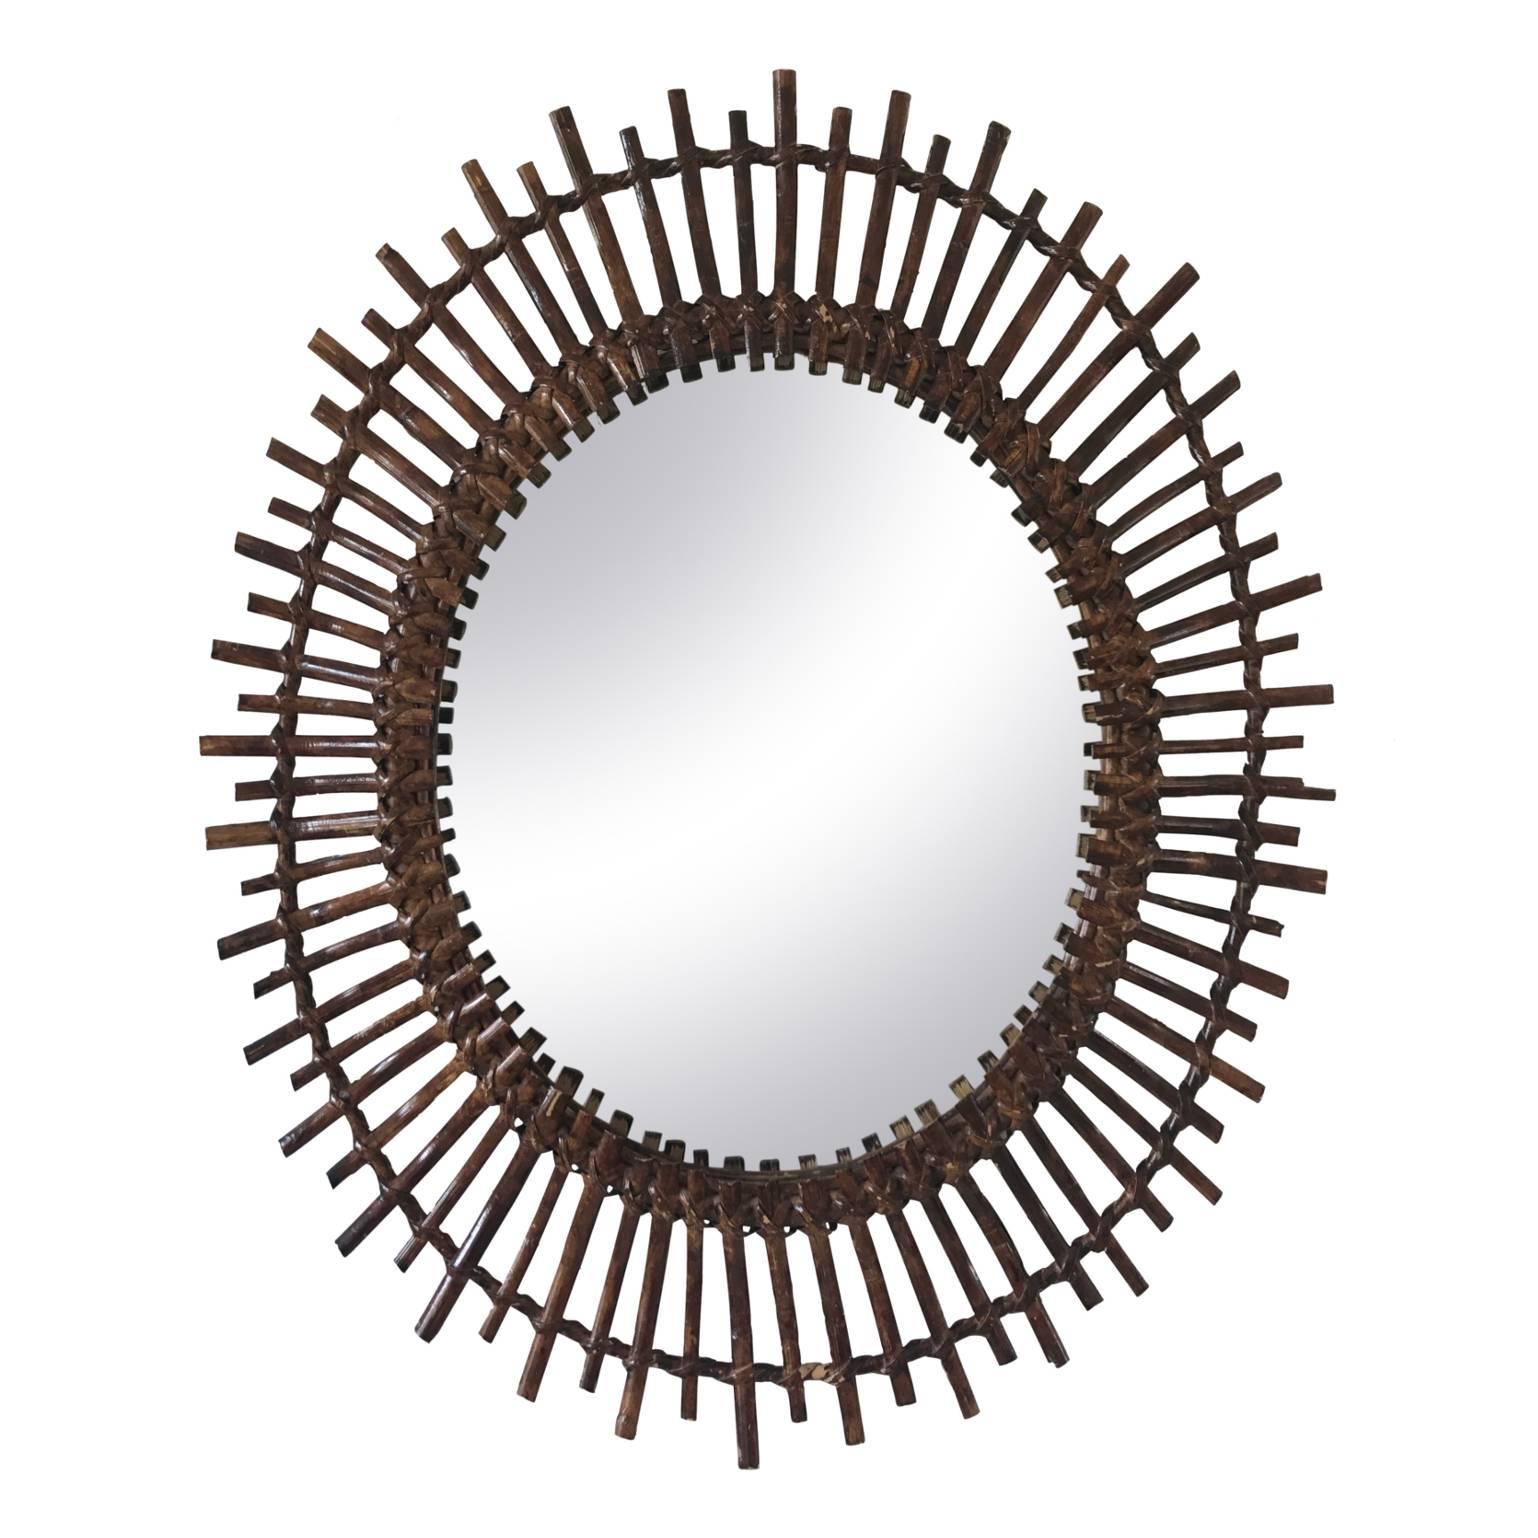 Oval Mid-Century Modern Spanish Rattan Sunburst Mirror, 1960s